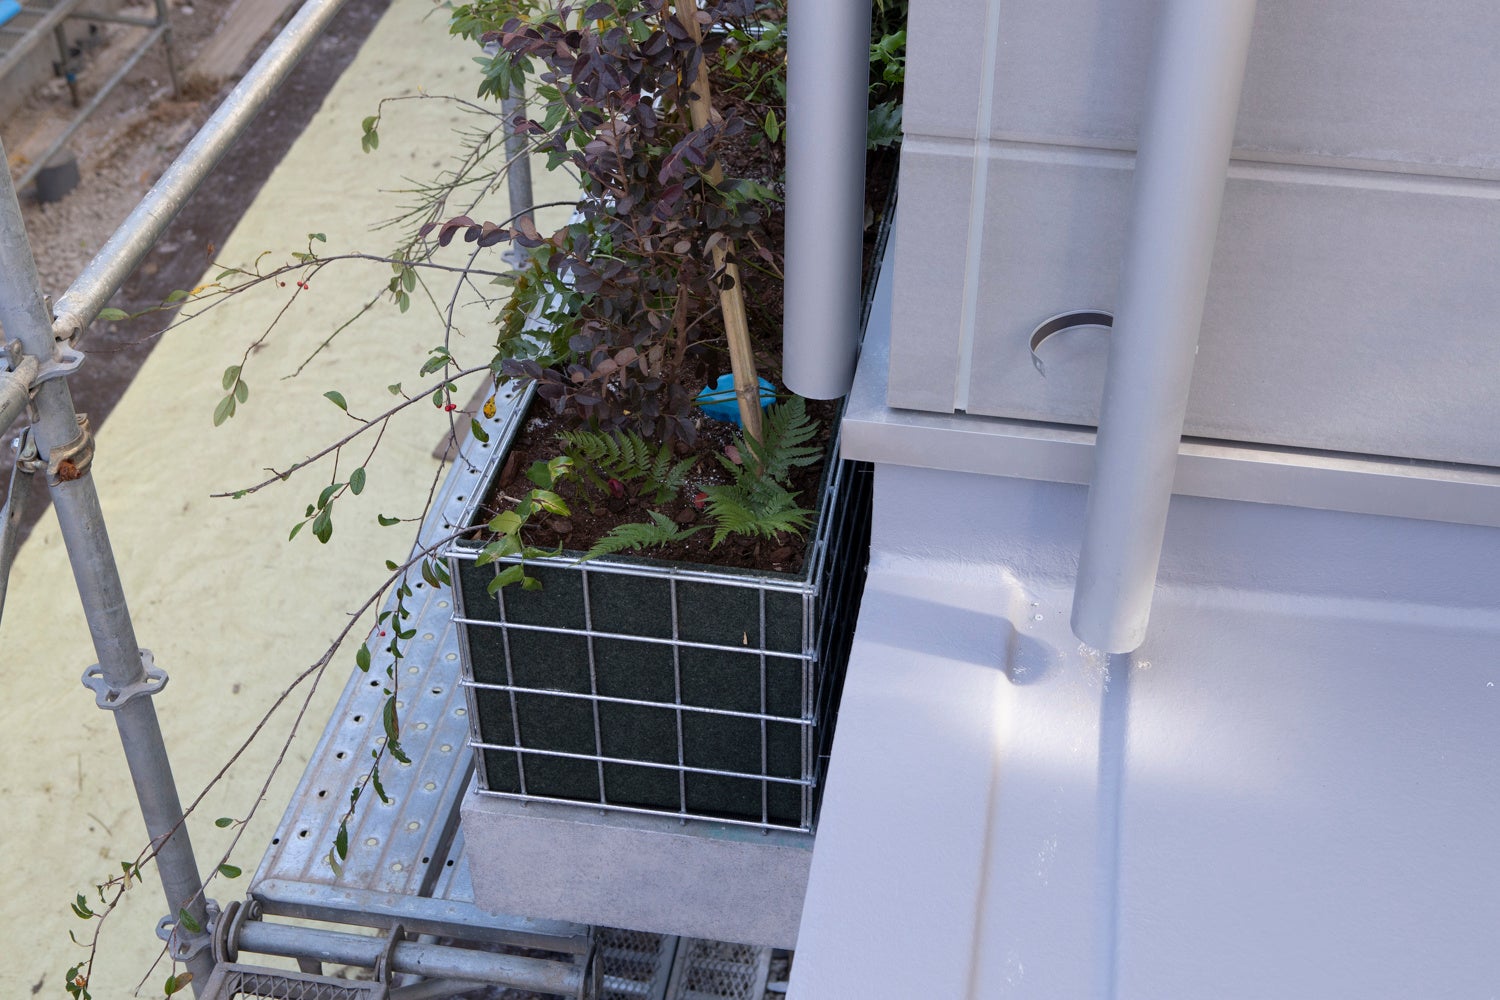 LEED認証取得の賃貸住宅「鈴森village」、埼玉県和光市に誕生のサブ画像5_建物取り囲むように配置した植栽には、雨どいからの雨水をしみ込ませる